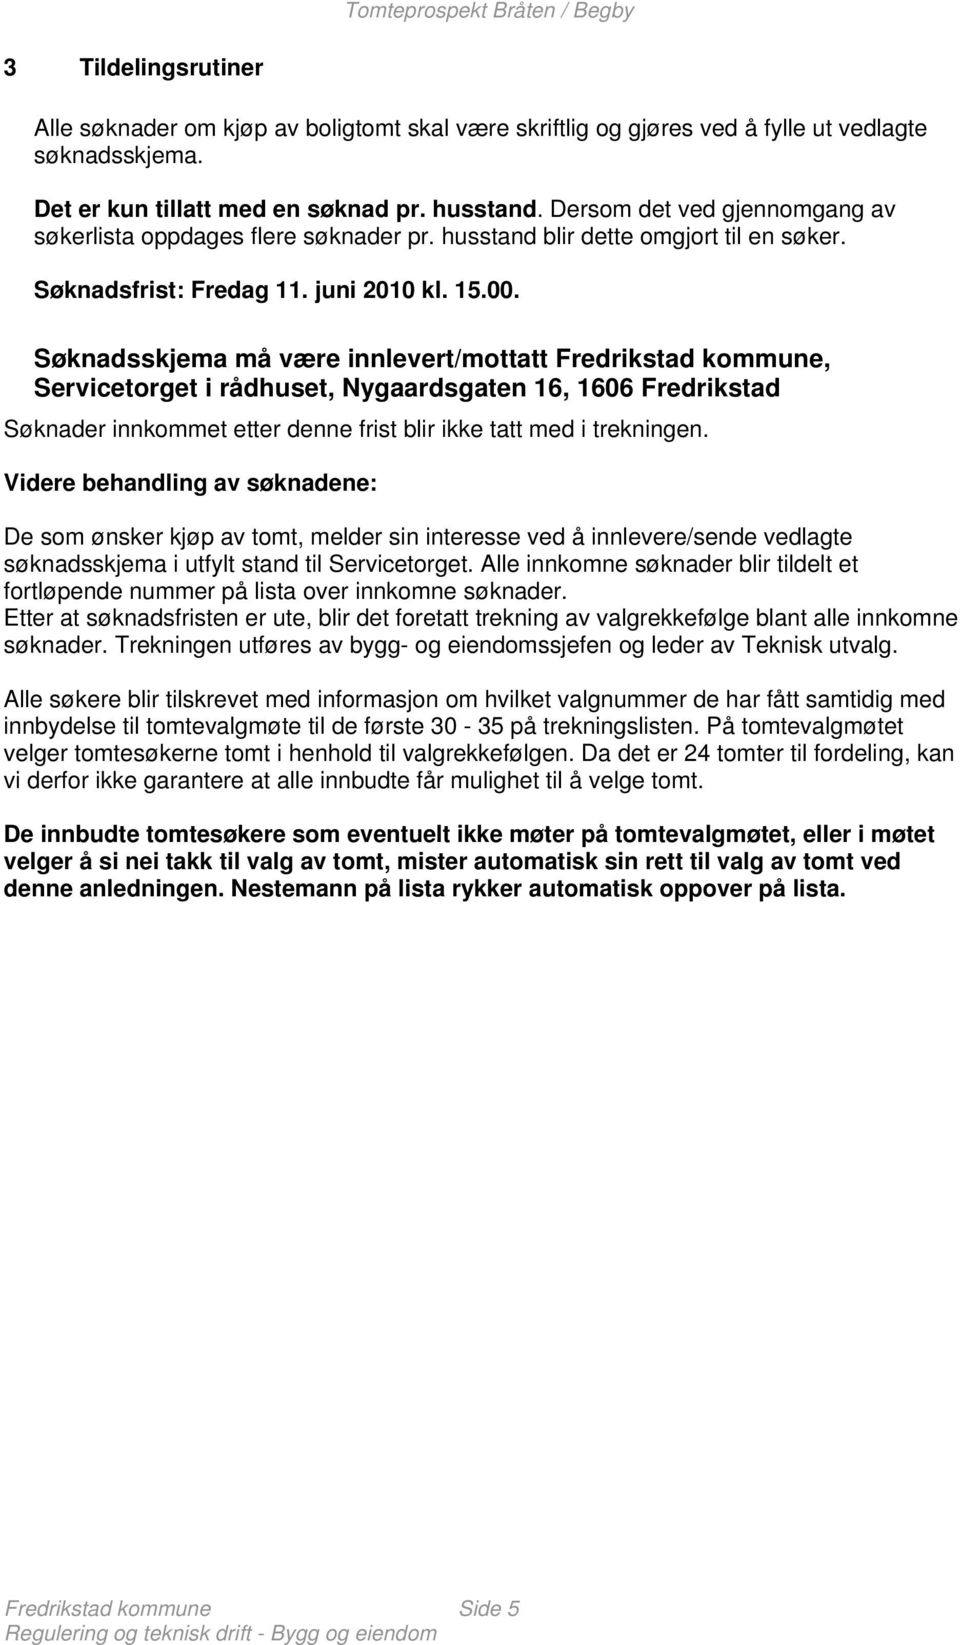 Søknadsskjema må være innlevert/mottatt Fredrikstad kommune, Servicetorget i rådhuset, Nygaardsgaten 16, 1606 Fredrikstad Søknader innkommet etter denne frist blir ikke tatt med i trekningen.